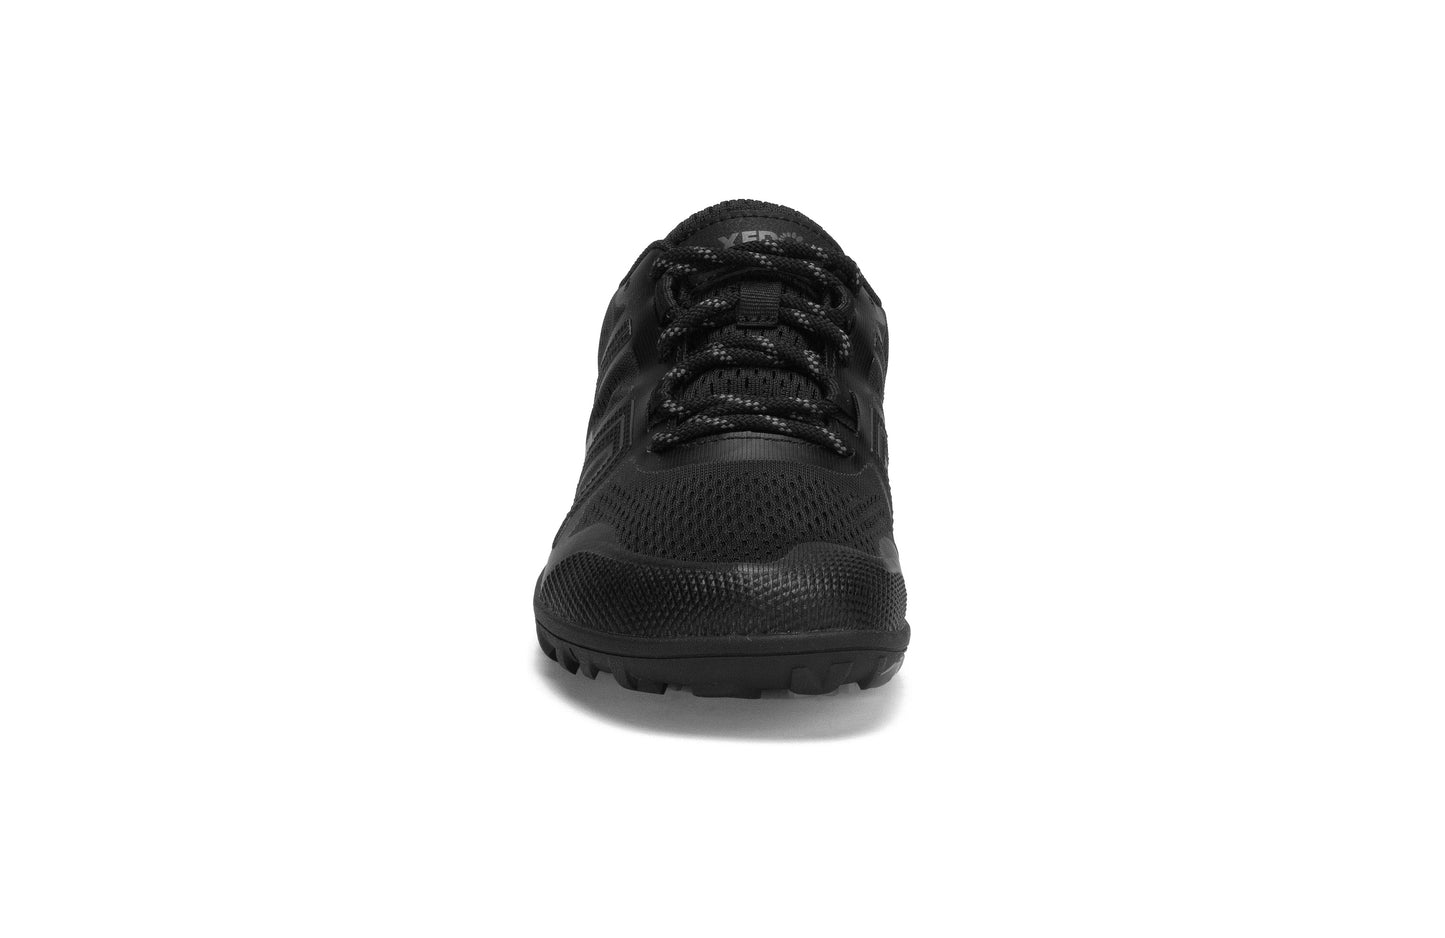 Xero Shoes Mesa Trail barfods trailsko til kvinder i farven black, forfra